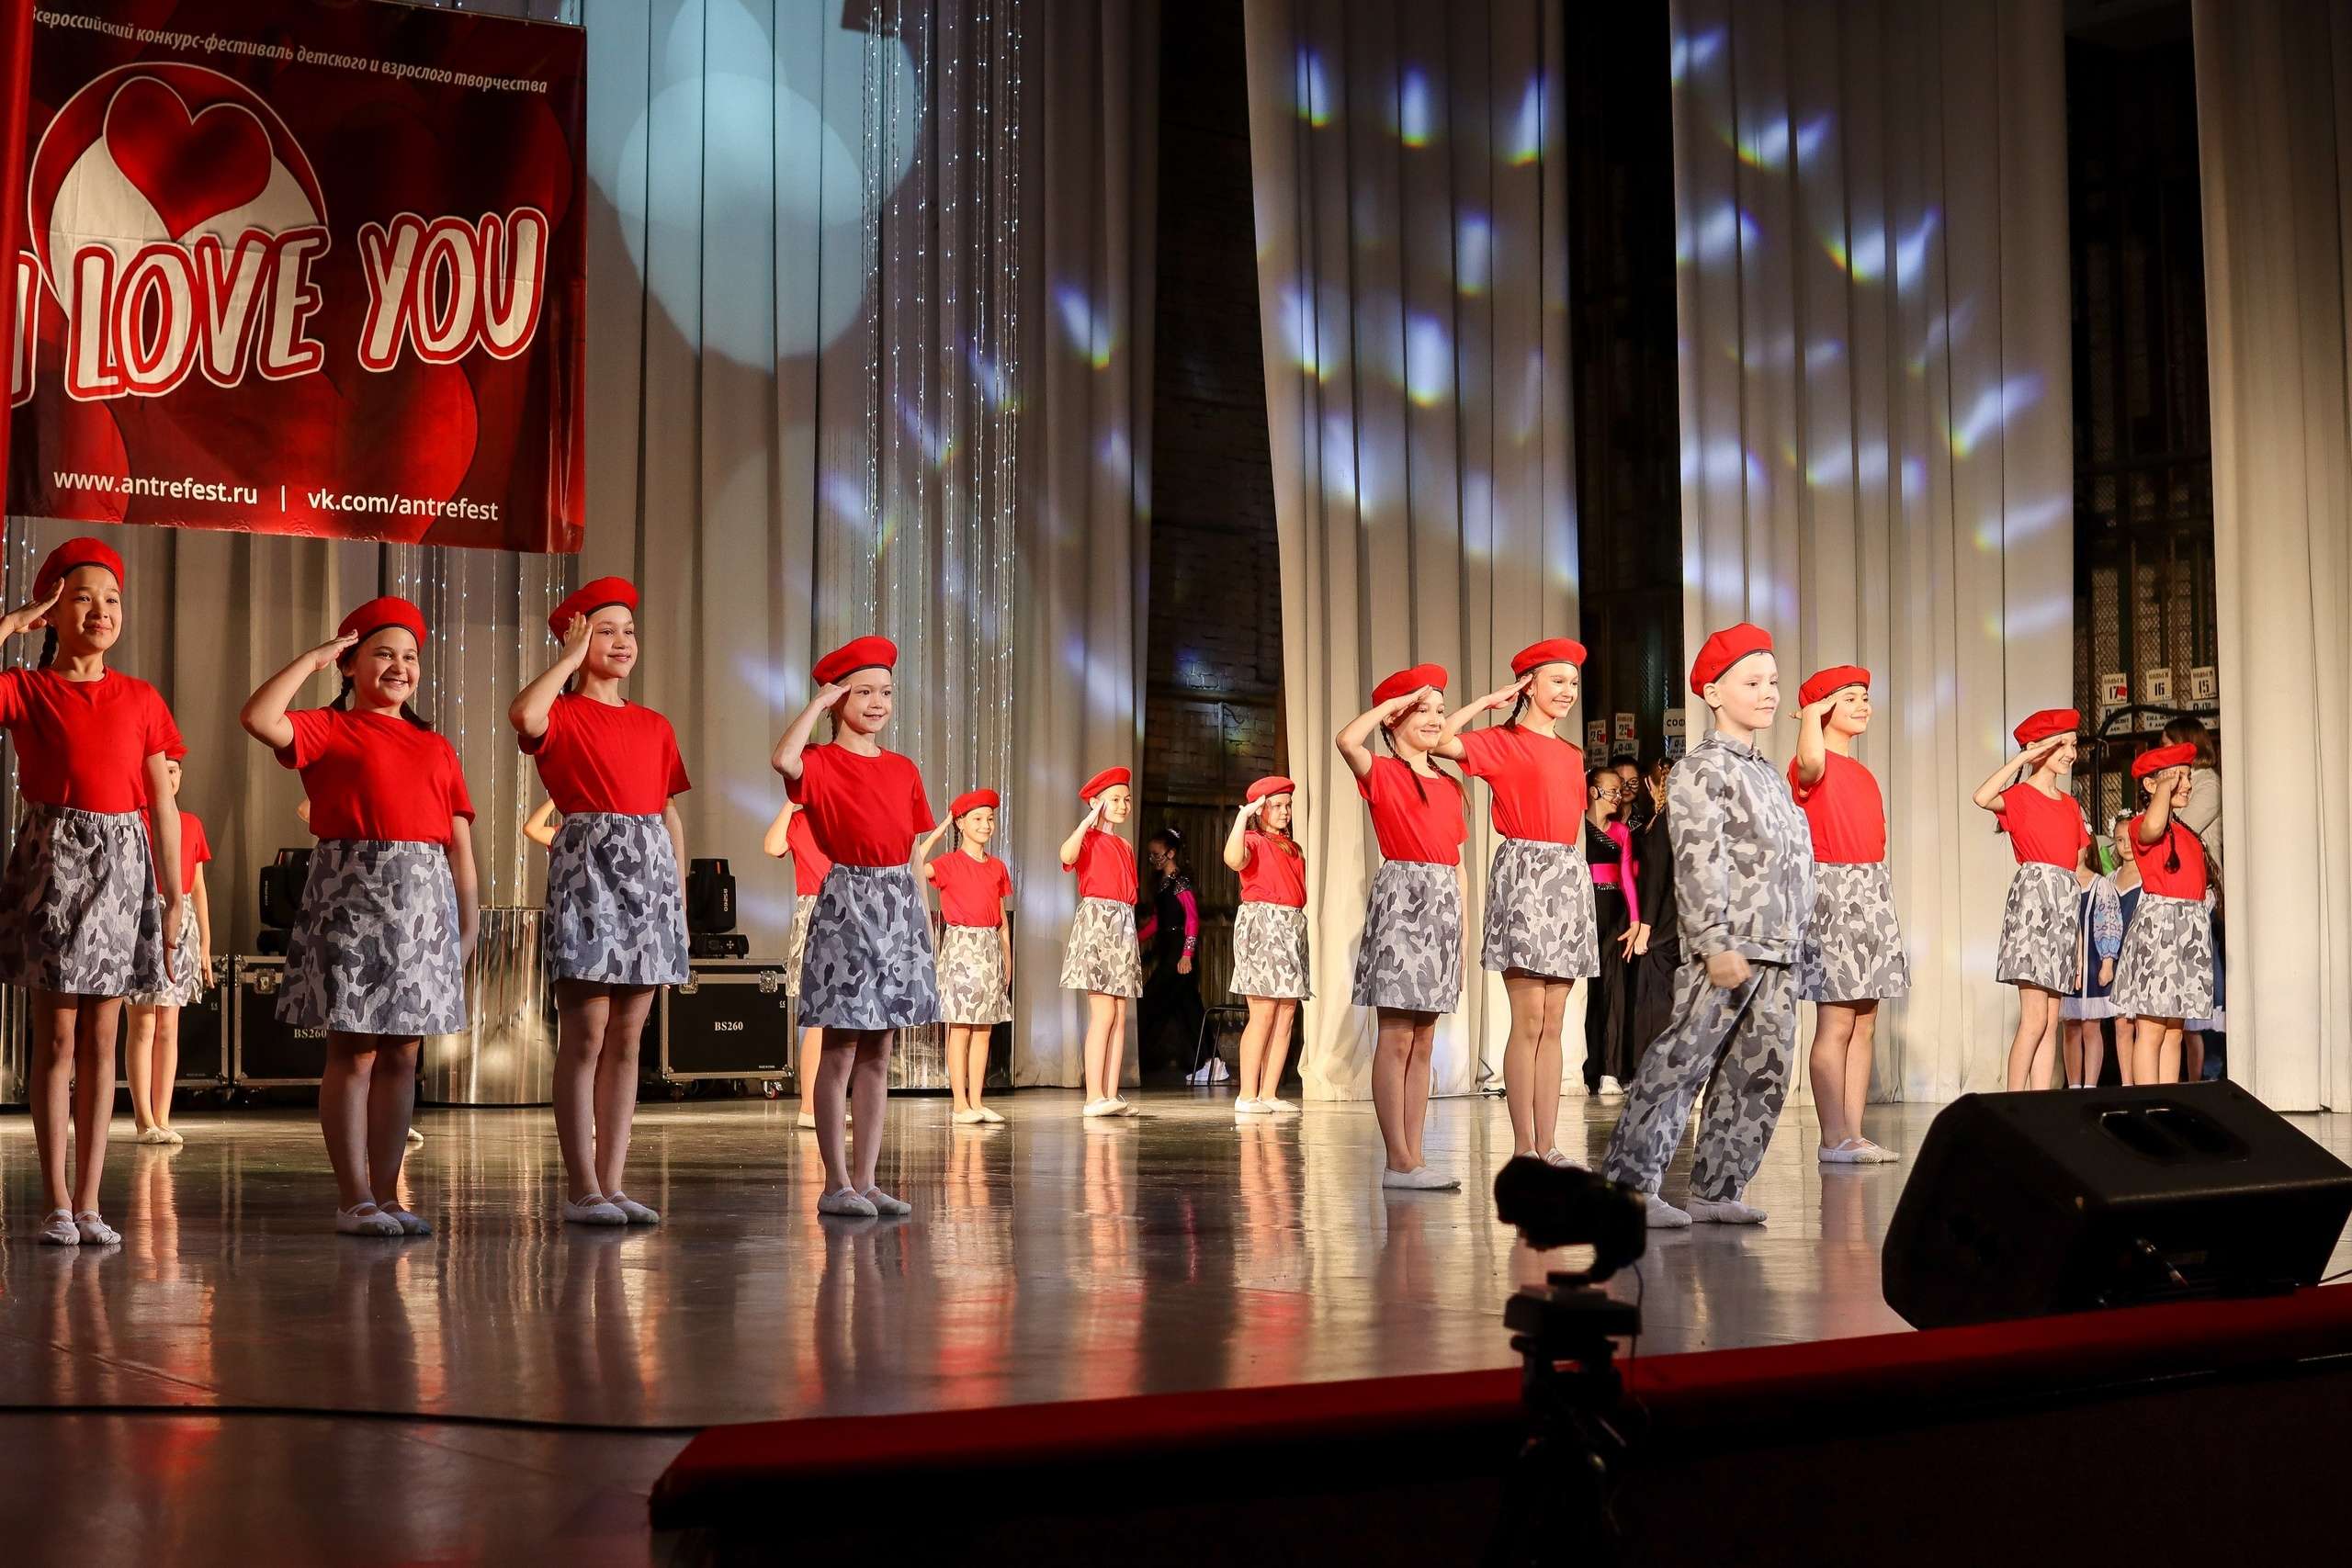 18 марта средняя группа танцевальной студии " PROдвижение" приняла участие во всероссийском танцевальном конкурсе "I LOVE YOU" и стала лауреатом 2 степени